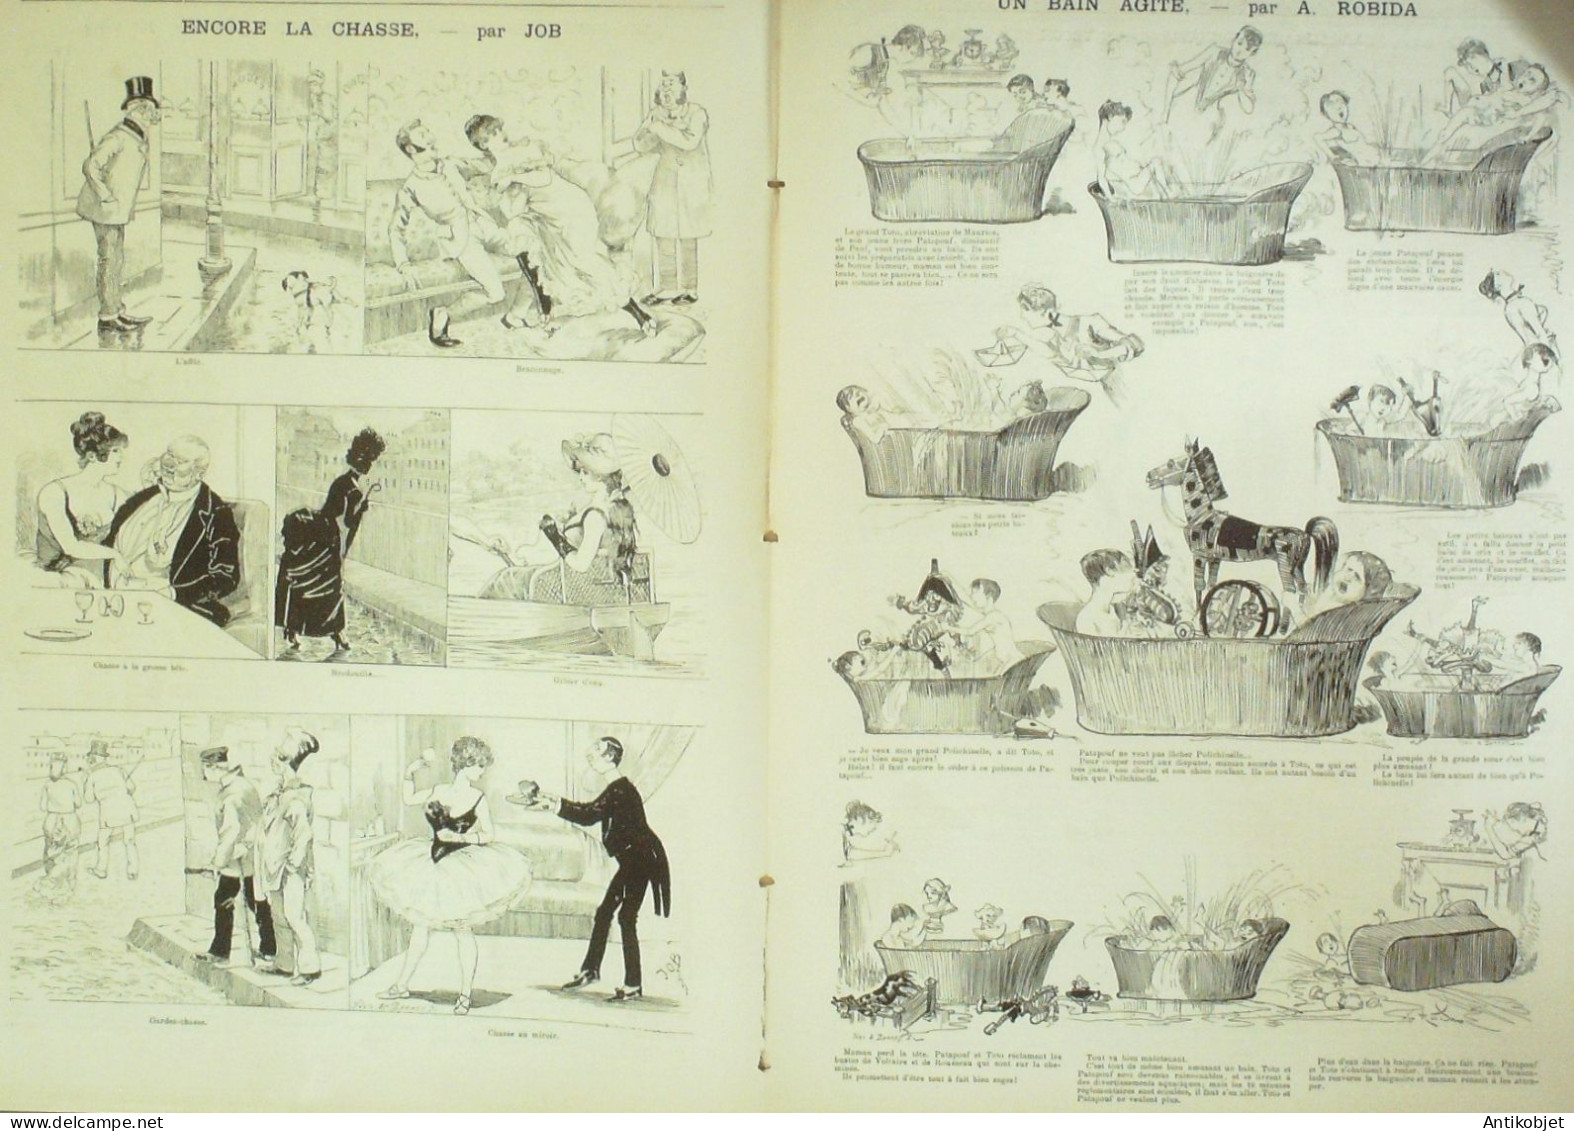 La Caricature 1885 N°299 Réservistes En Manoeuvres Draner Gino Robida Job - Revues Anciennes - Avant 1900